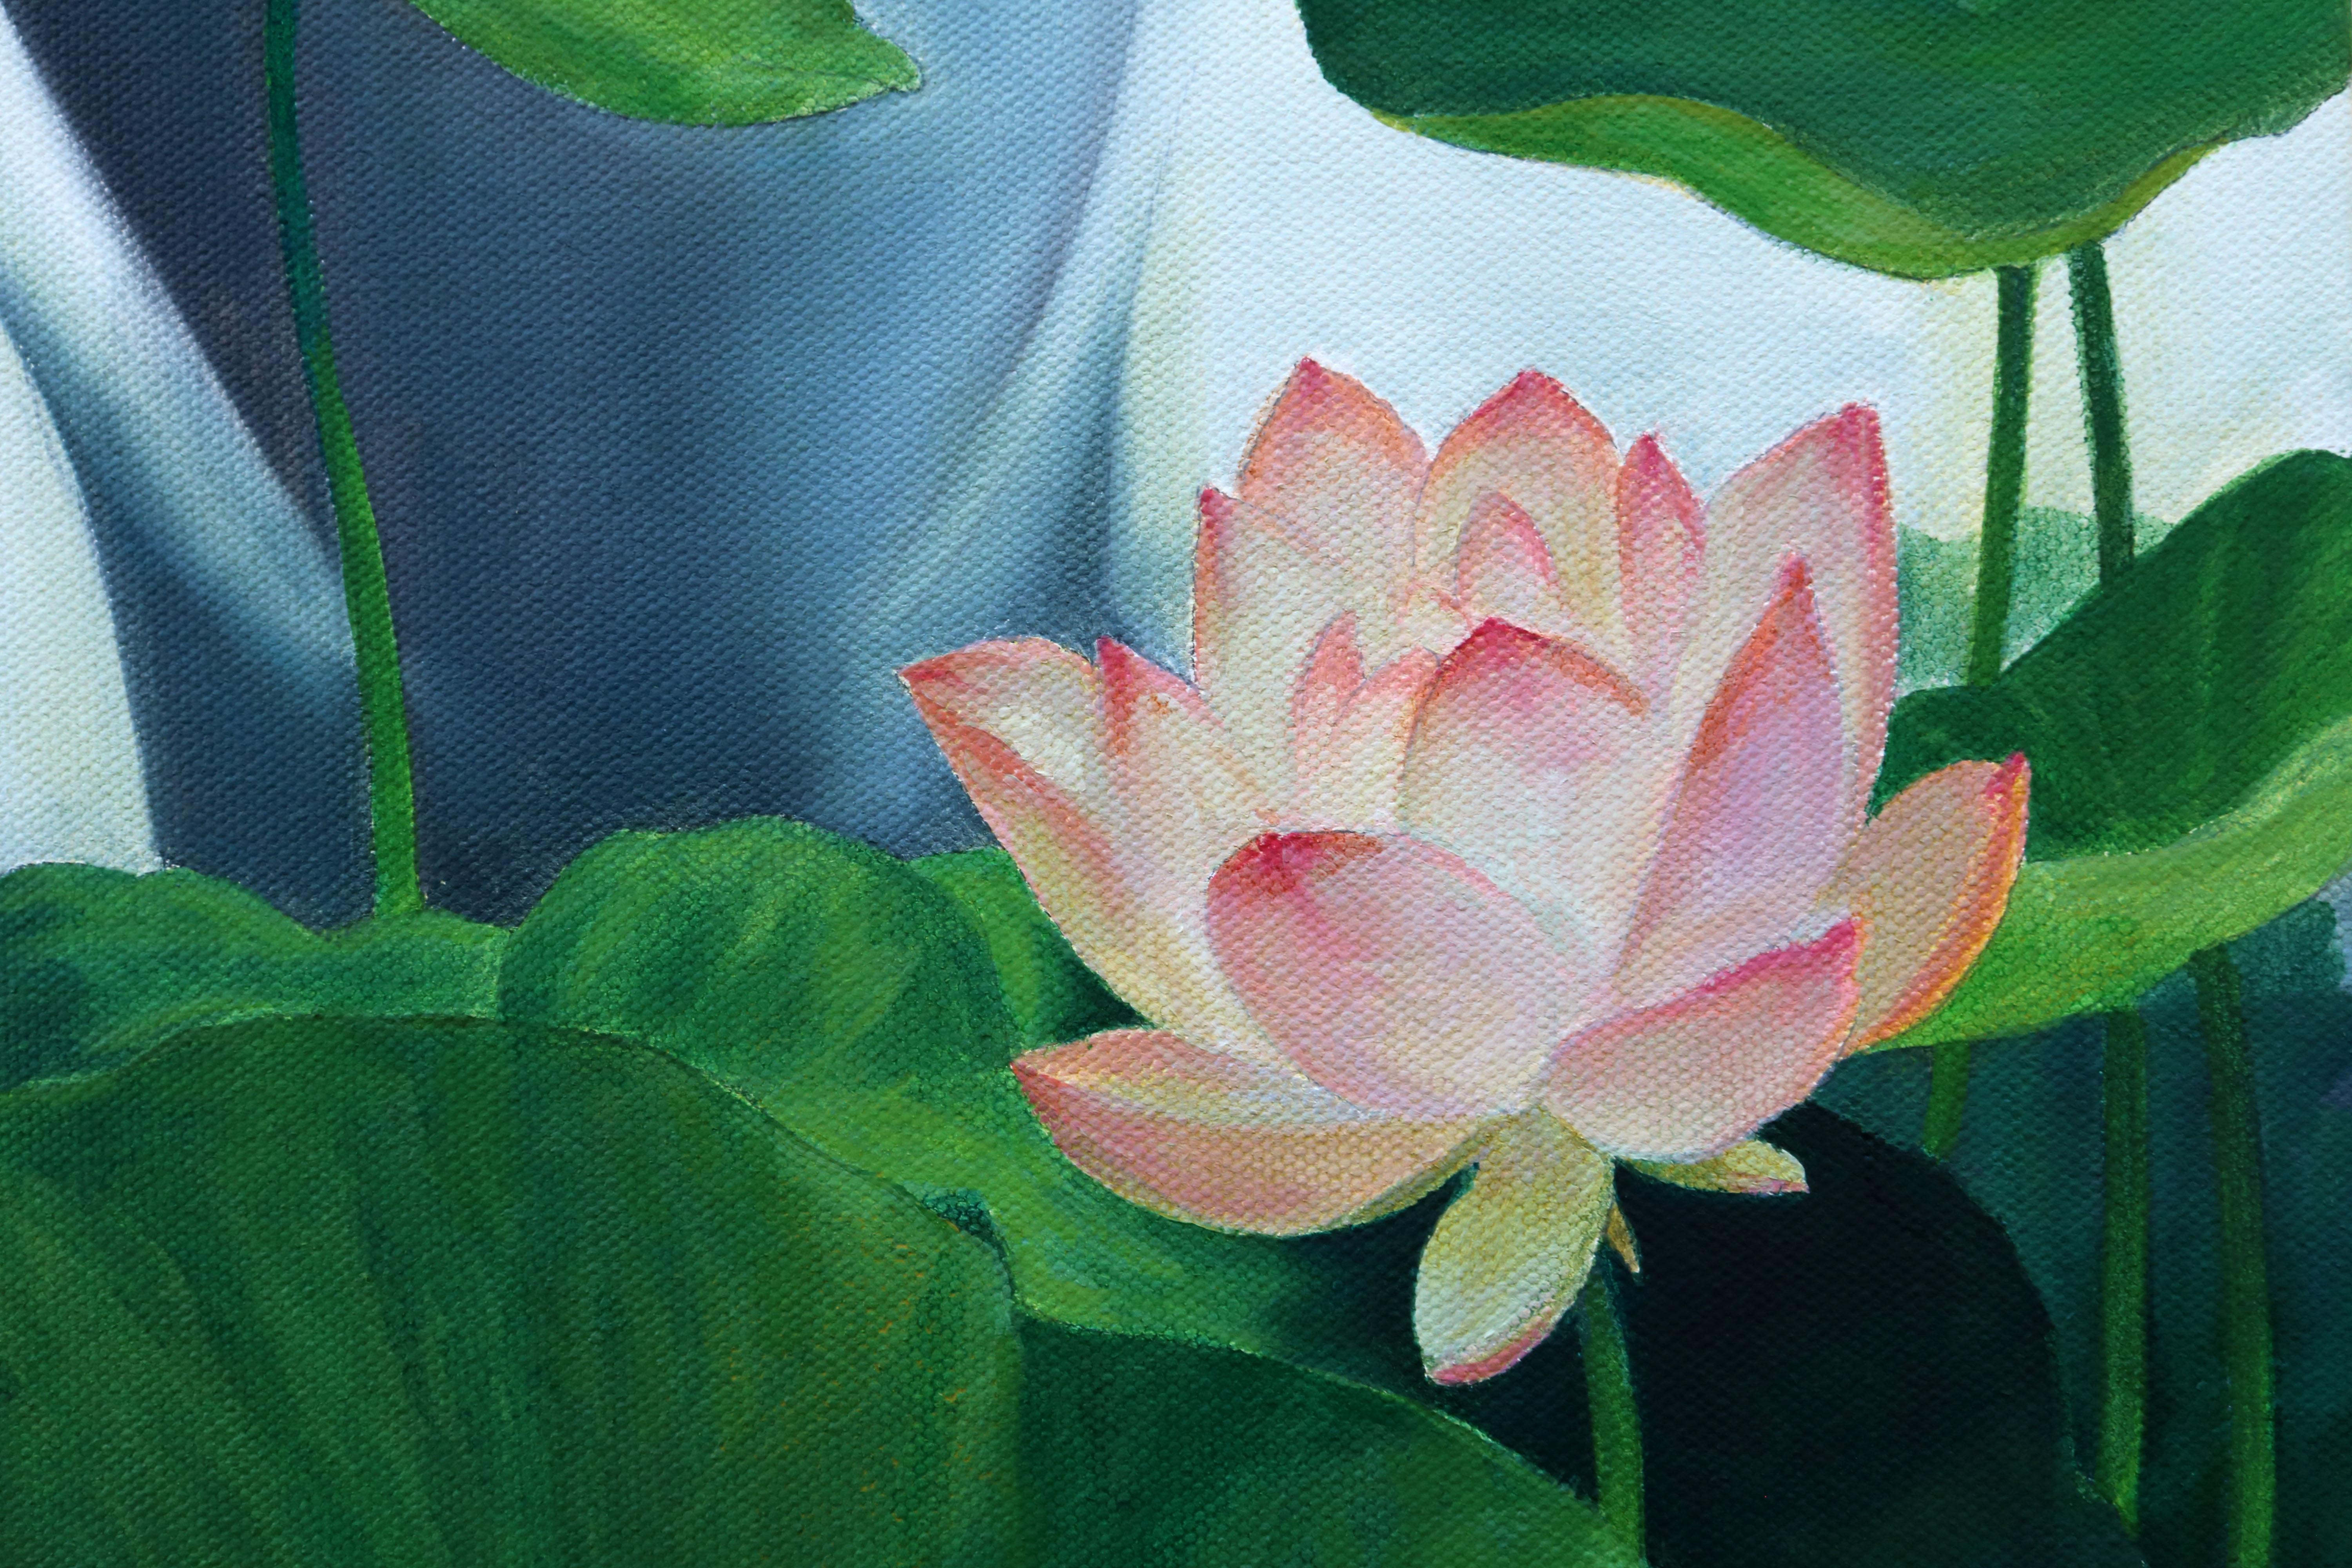 <p>Commentaires de l'artiste<br>Une fleur de lotus se balance dans la brise parmi les feuilles hautes et basses. L'artiste Guigen Zha met en scène un symbole culturel de pureté dans une interprétation poétique. 